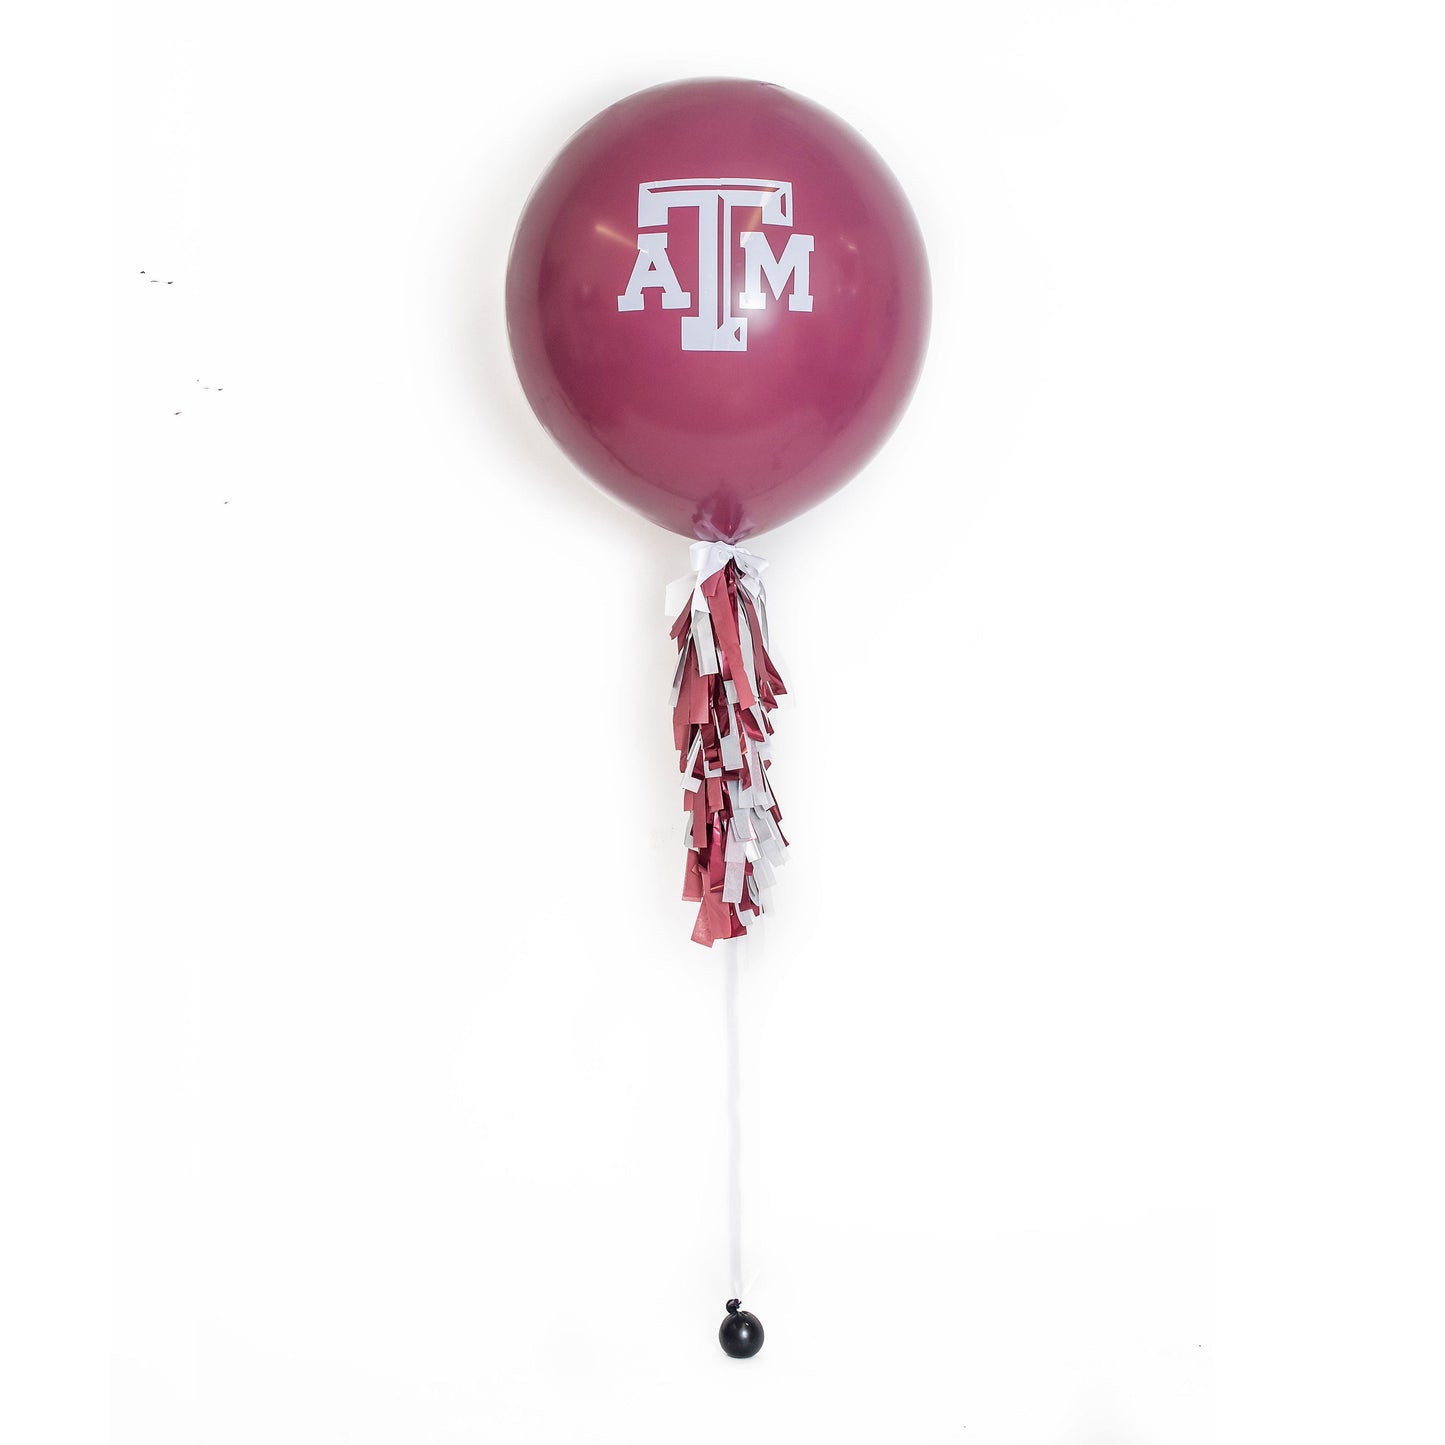 Jumbo Balloon - Local Pickup